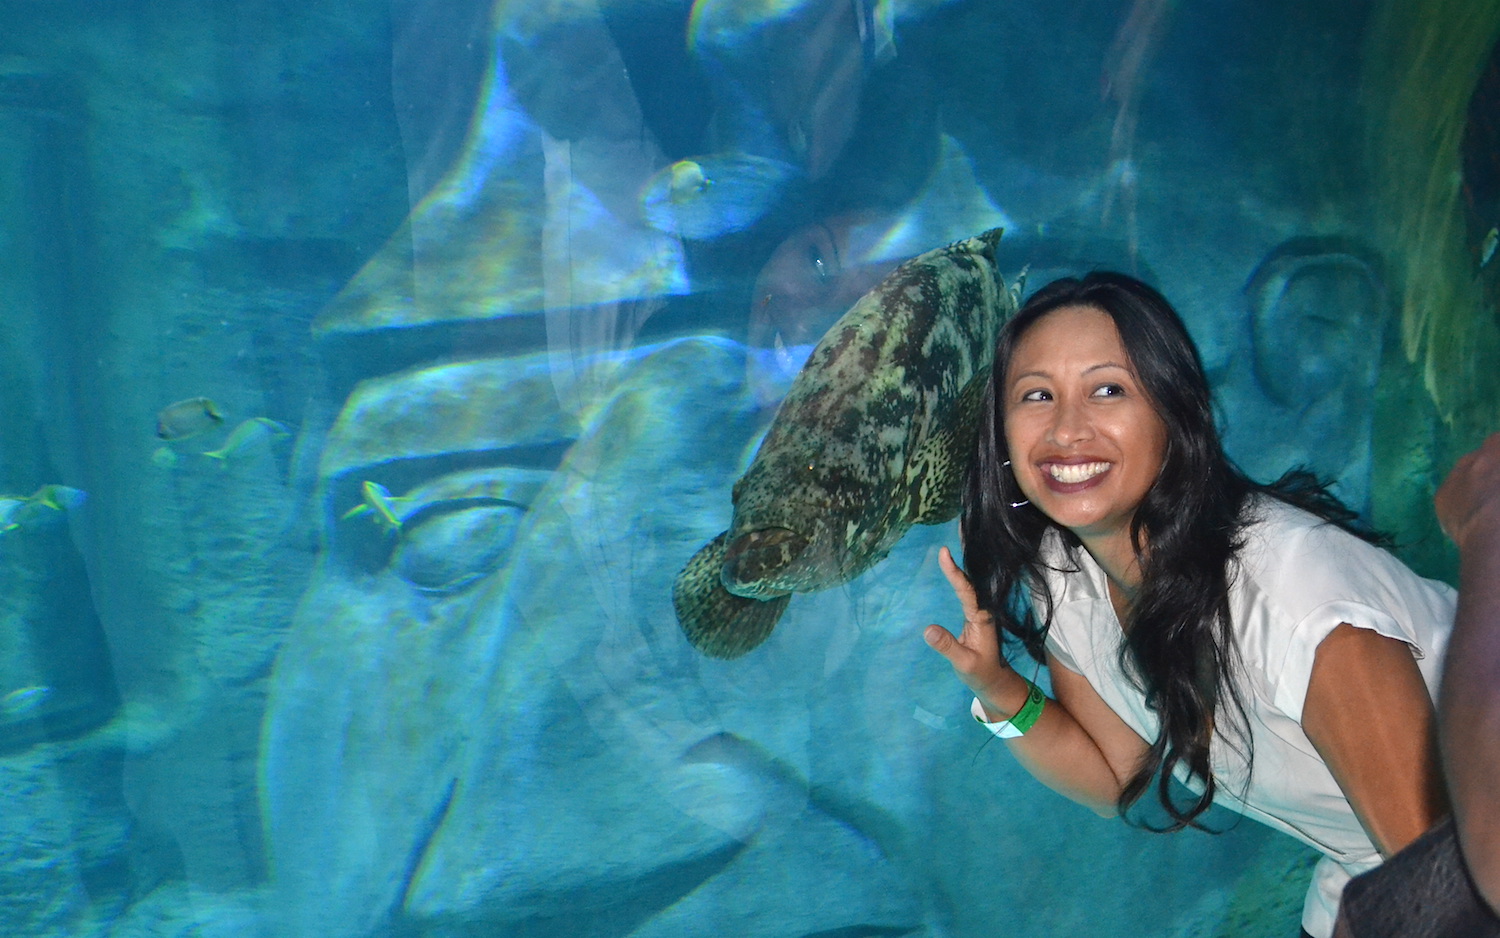 Go Under-The-Sea at Orlando Sea Life Aquarium